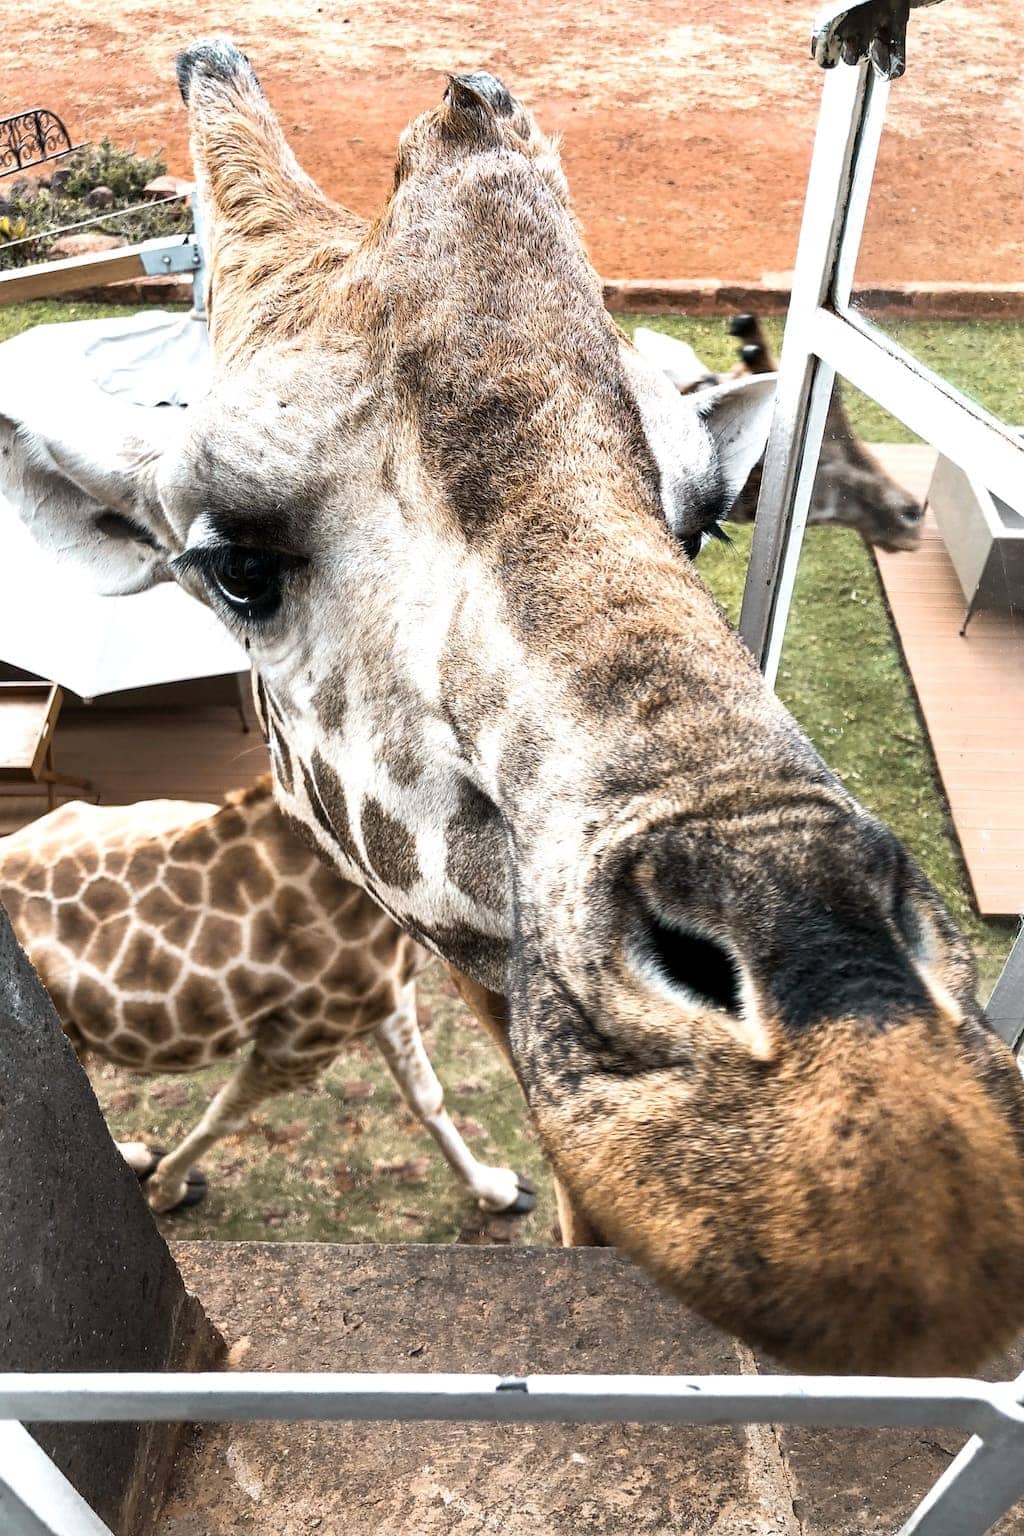 Giraffe Manor in Kenya: Giraffe at window